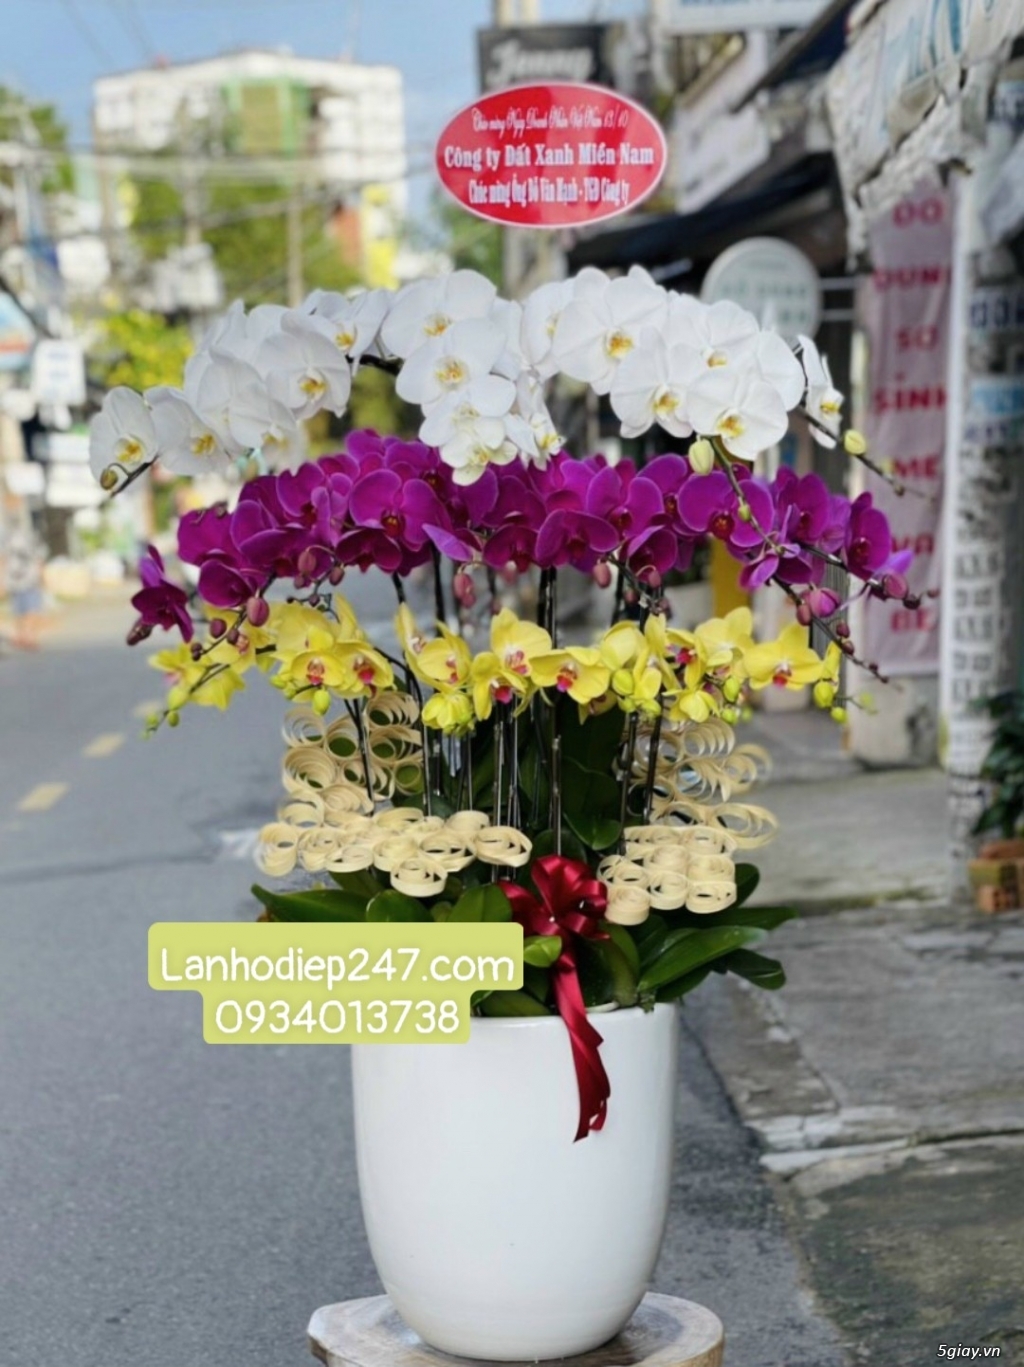 Shop Lan Hồ Điệp Sài Gòn 247 chuyên cung cấp hoa tươi uy tín số 1 HCM - 14